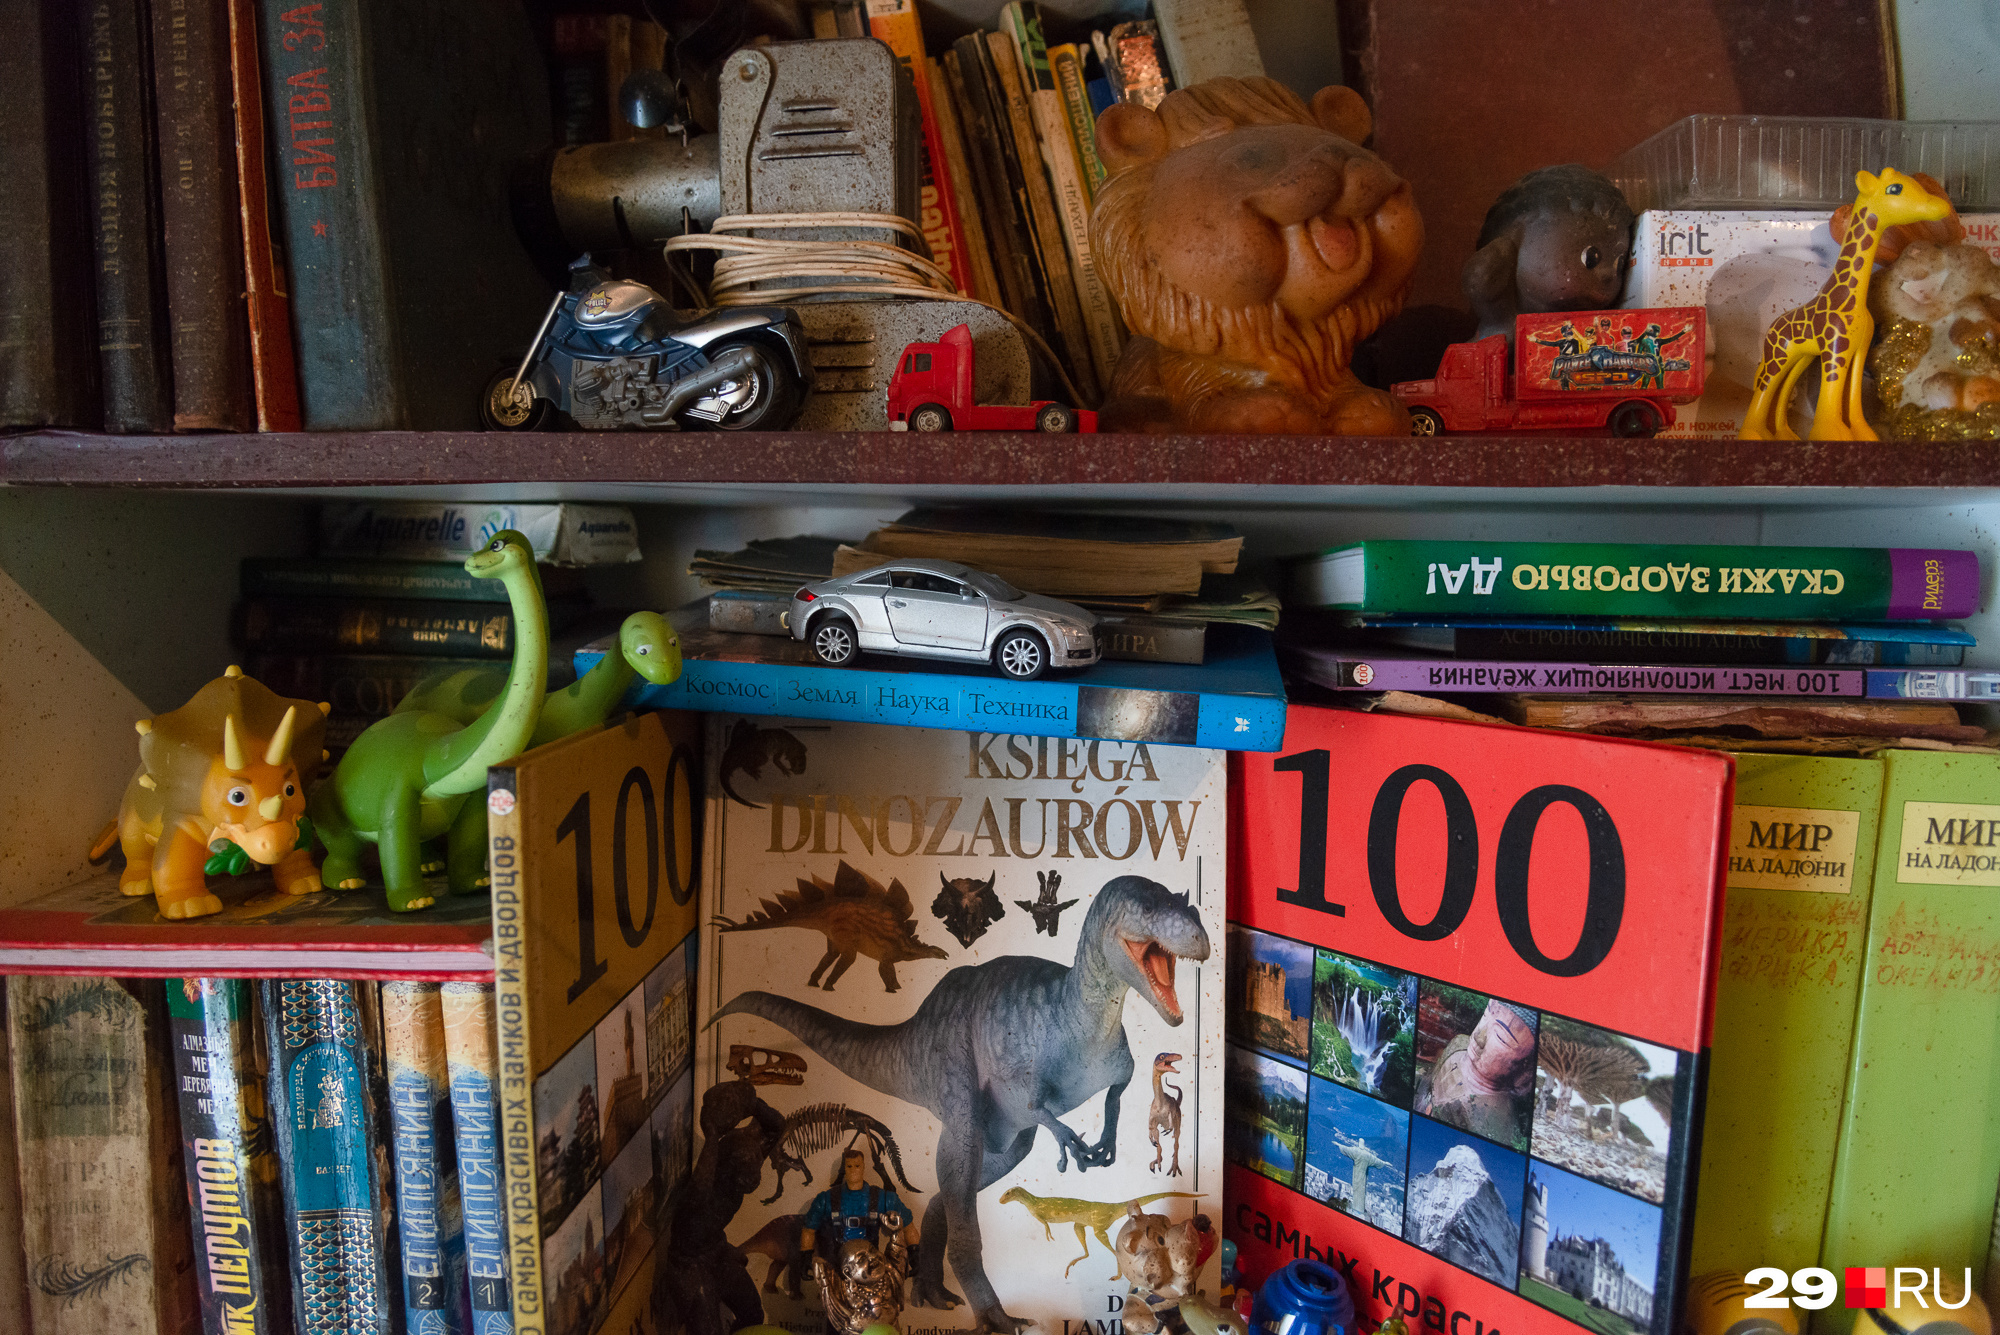 Жемчужина в библиотеке пенсионера — книга про динозавров на польском. Юрий свободно владеет этим языком, у него польские корни